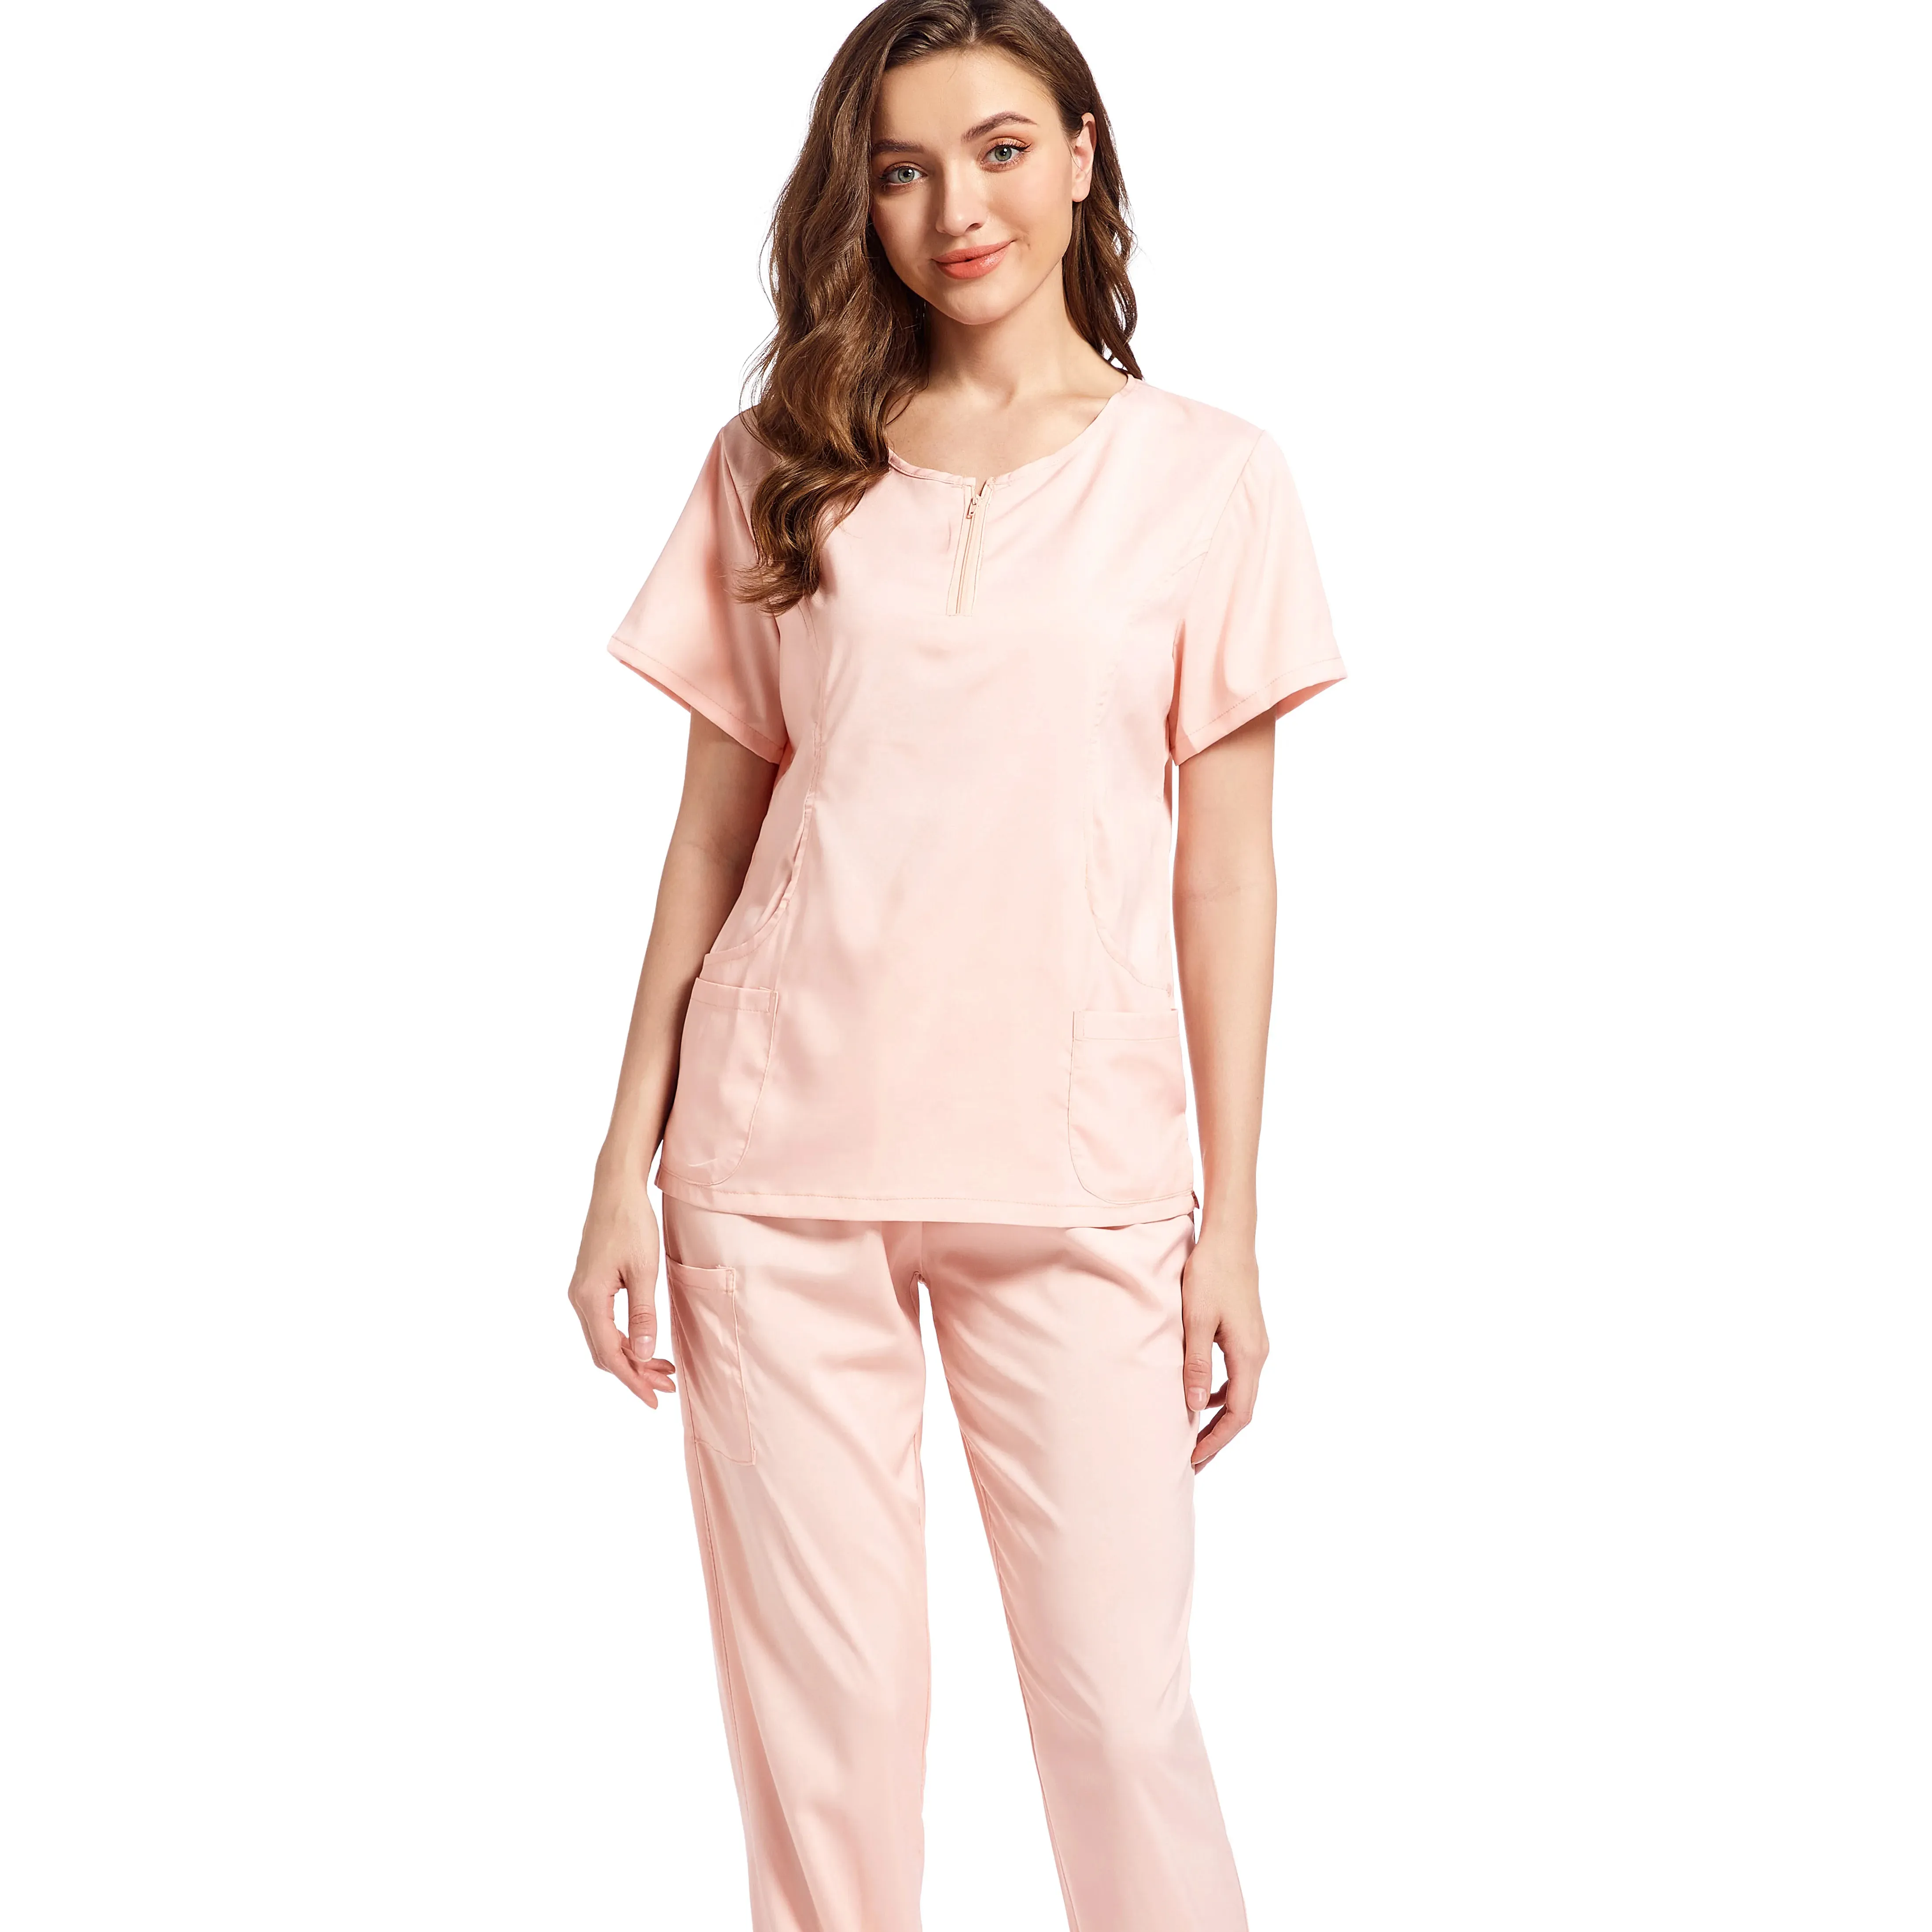 Lichtroze Scrubs Uniforms Mannen Mode Sets Korte Mouw Pak Dokter Ziekenhuis Medisch Elastisch Verpleging Scrubs Voor Vrouwen